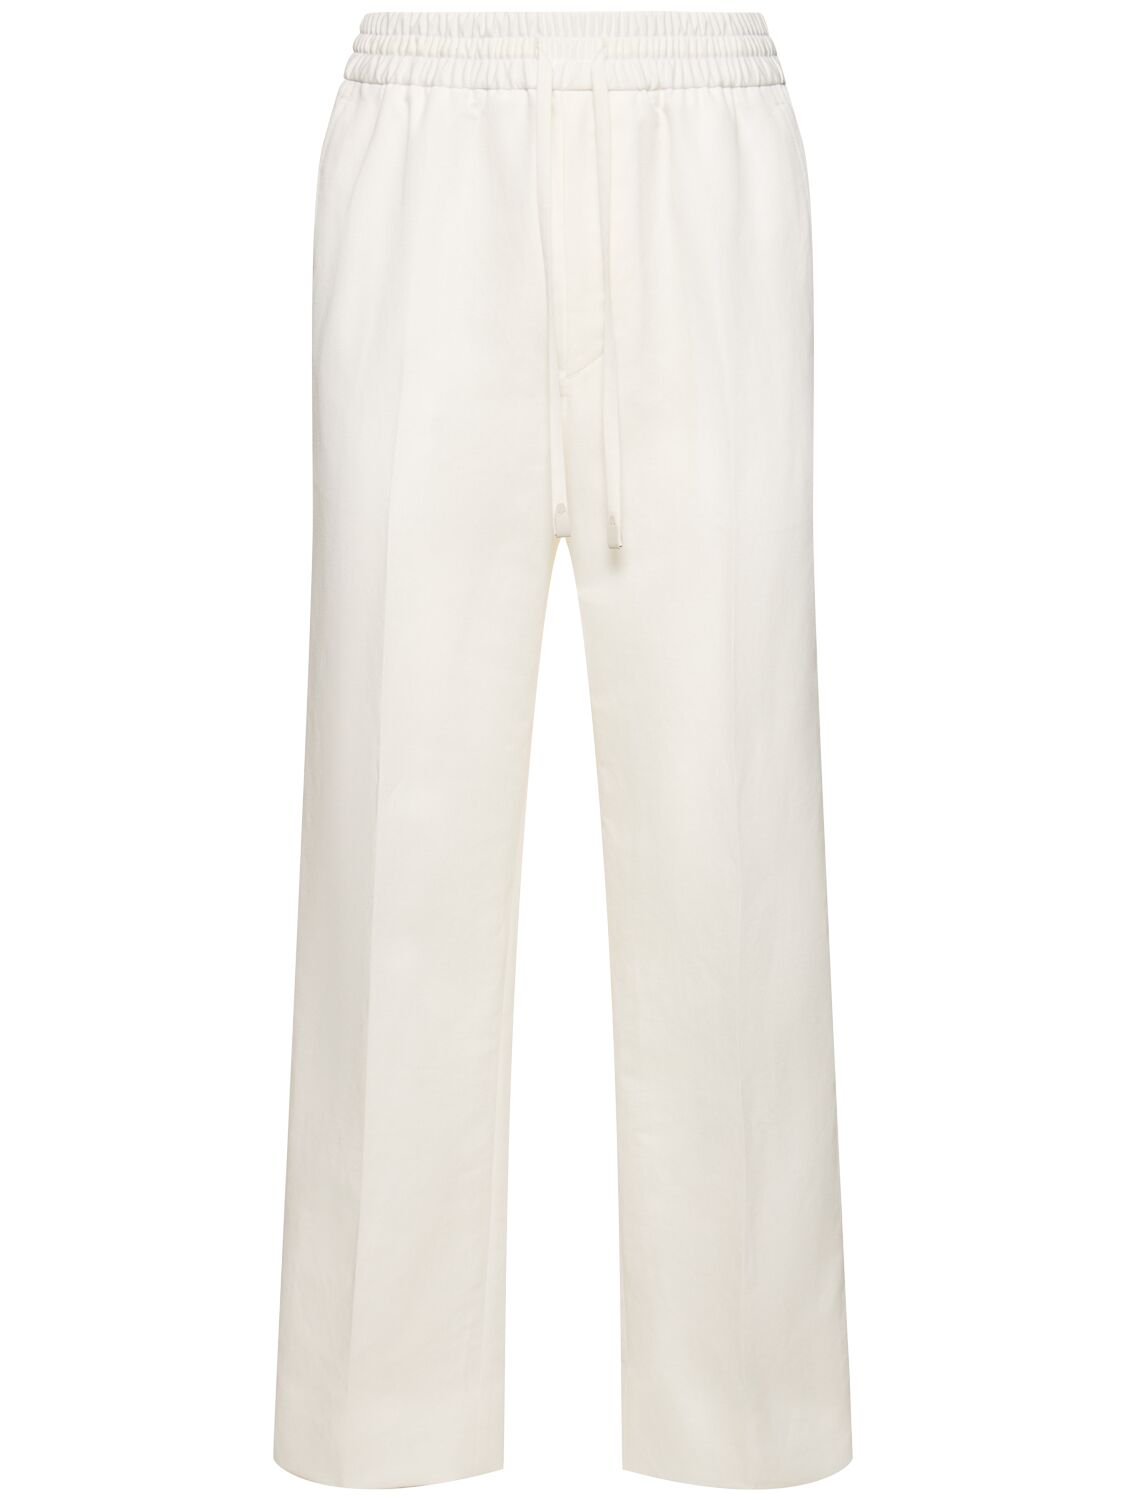 Asolo Cotton & Linen Sweatpants